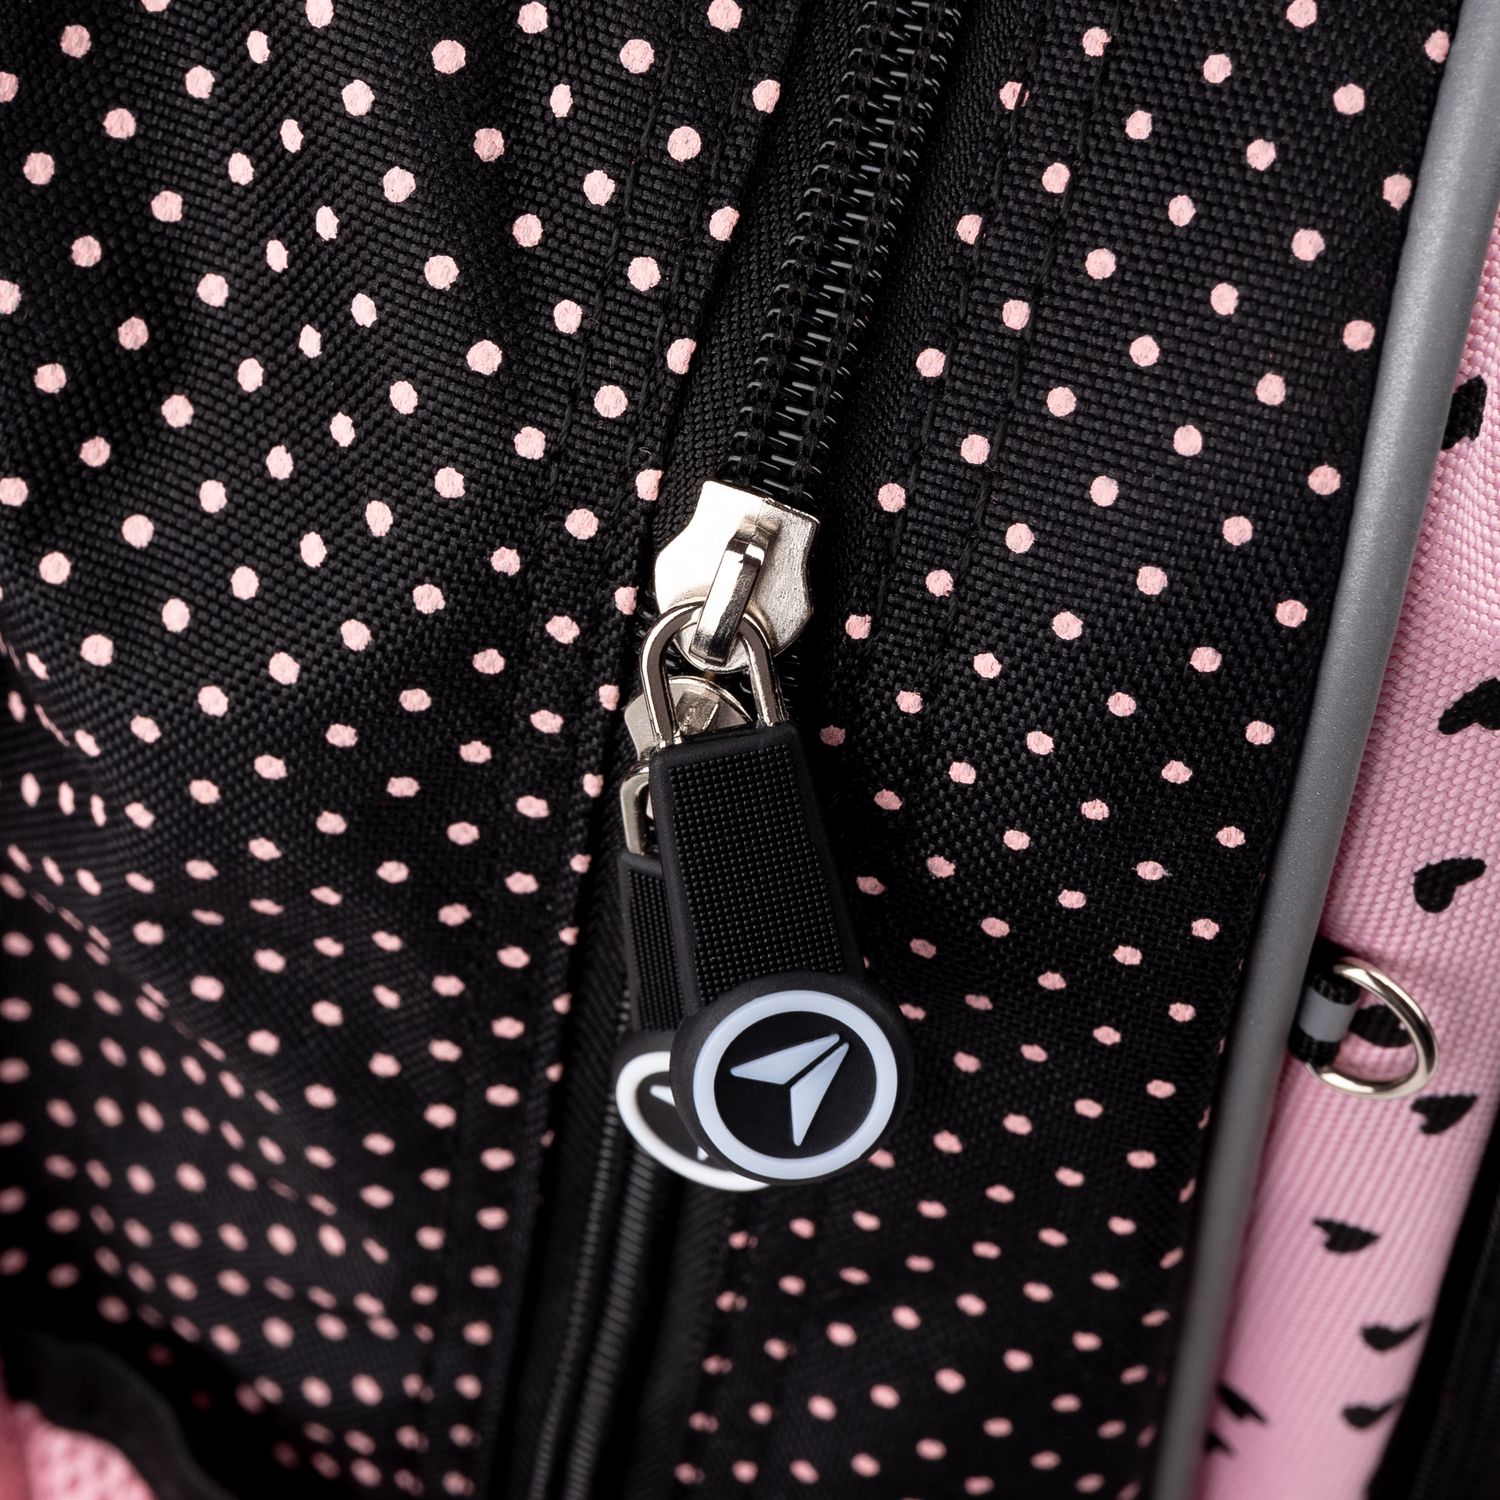 Рюкзак Yes S-72 Butterfly, серый с розовым (554631) - фото 13